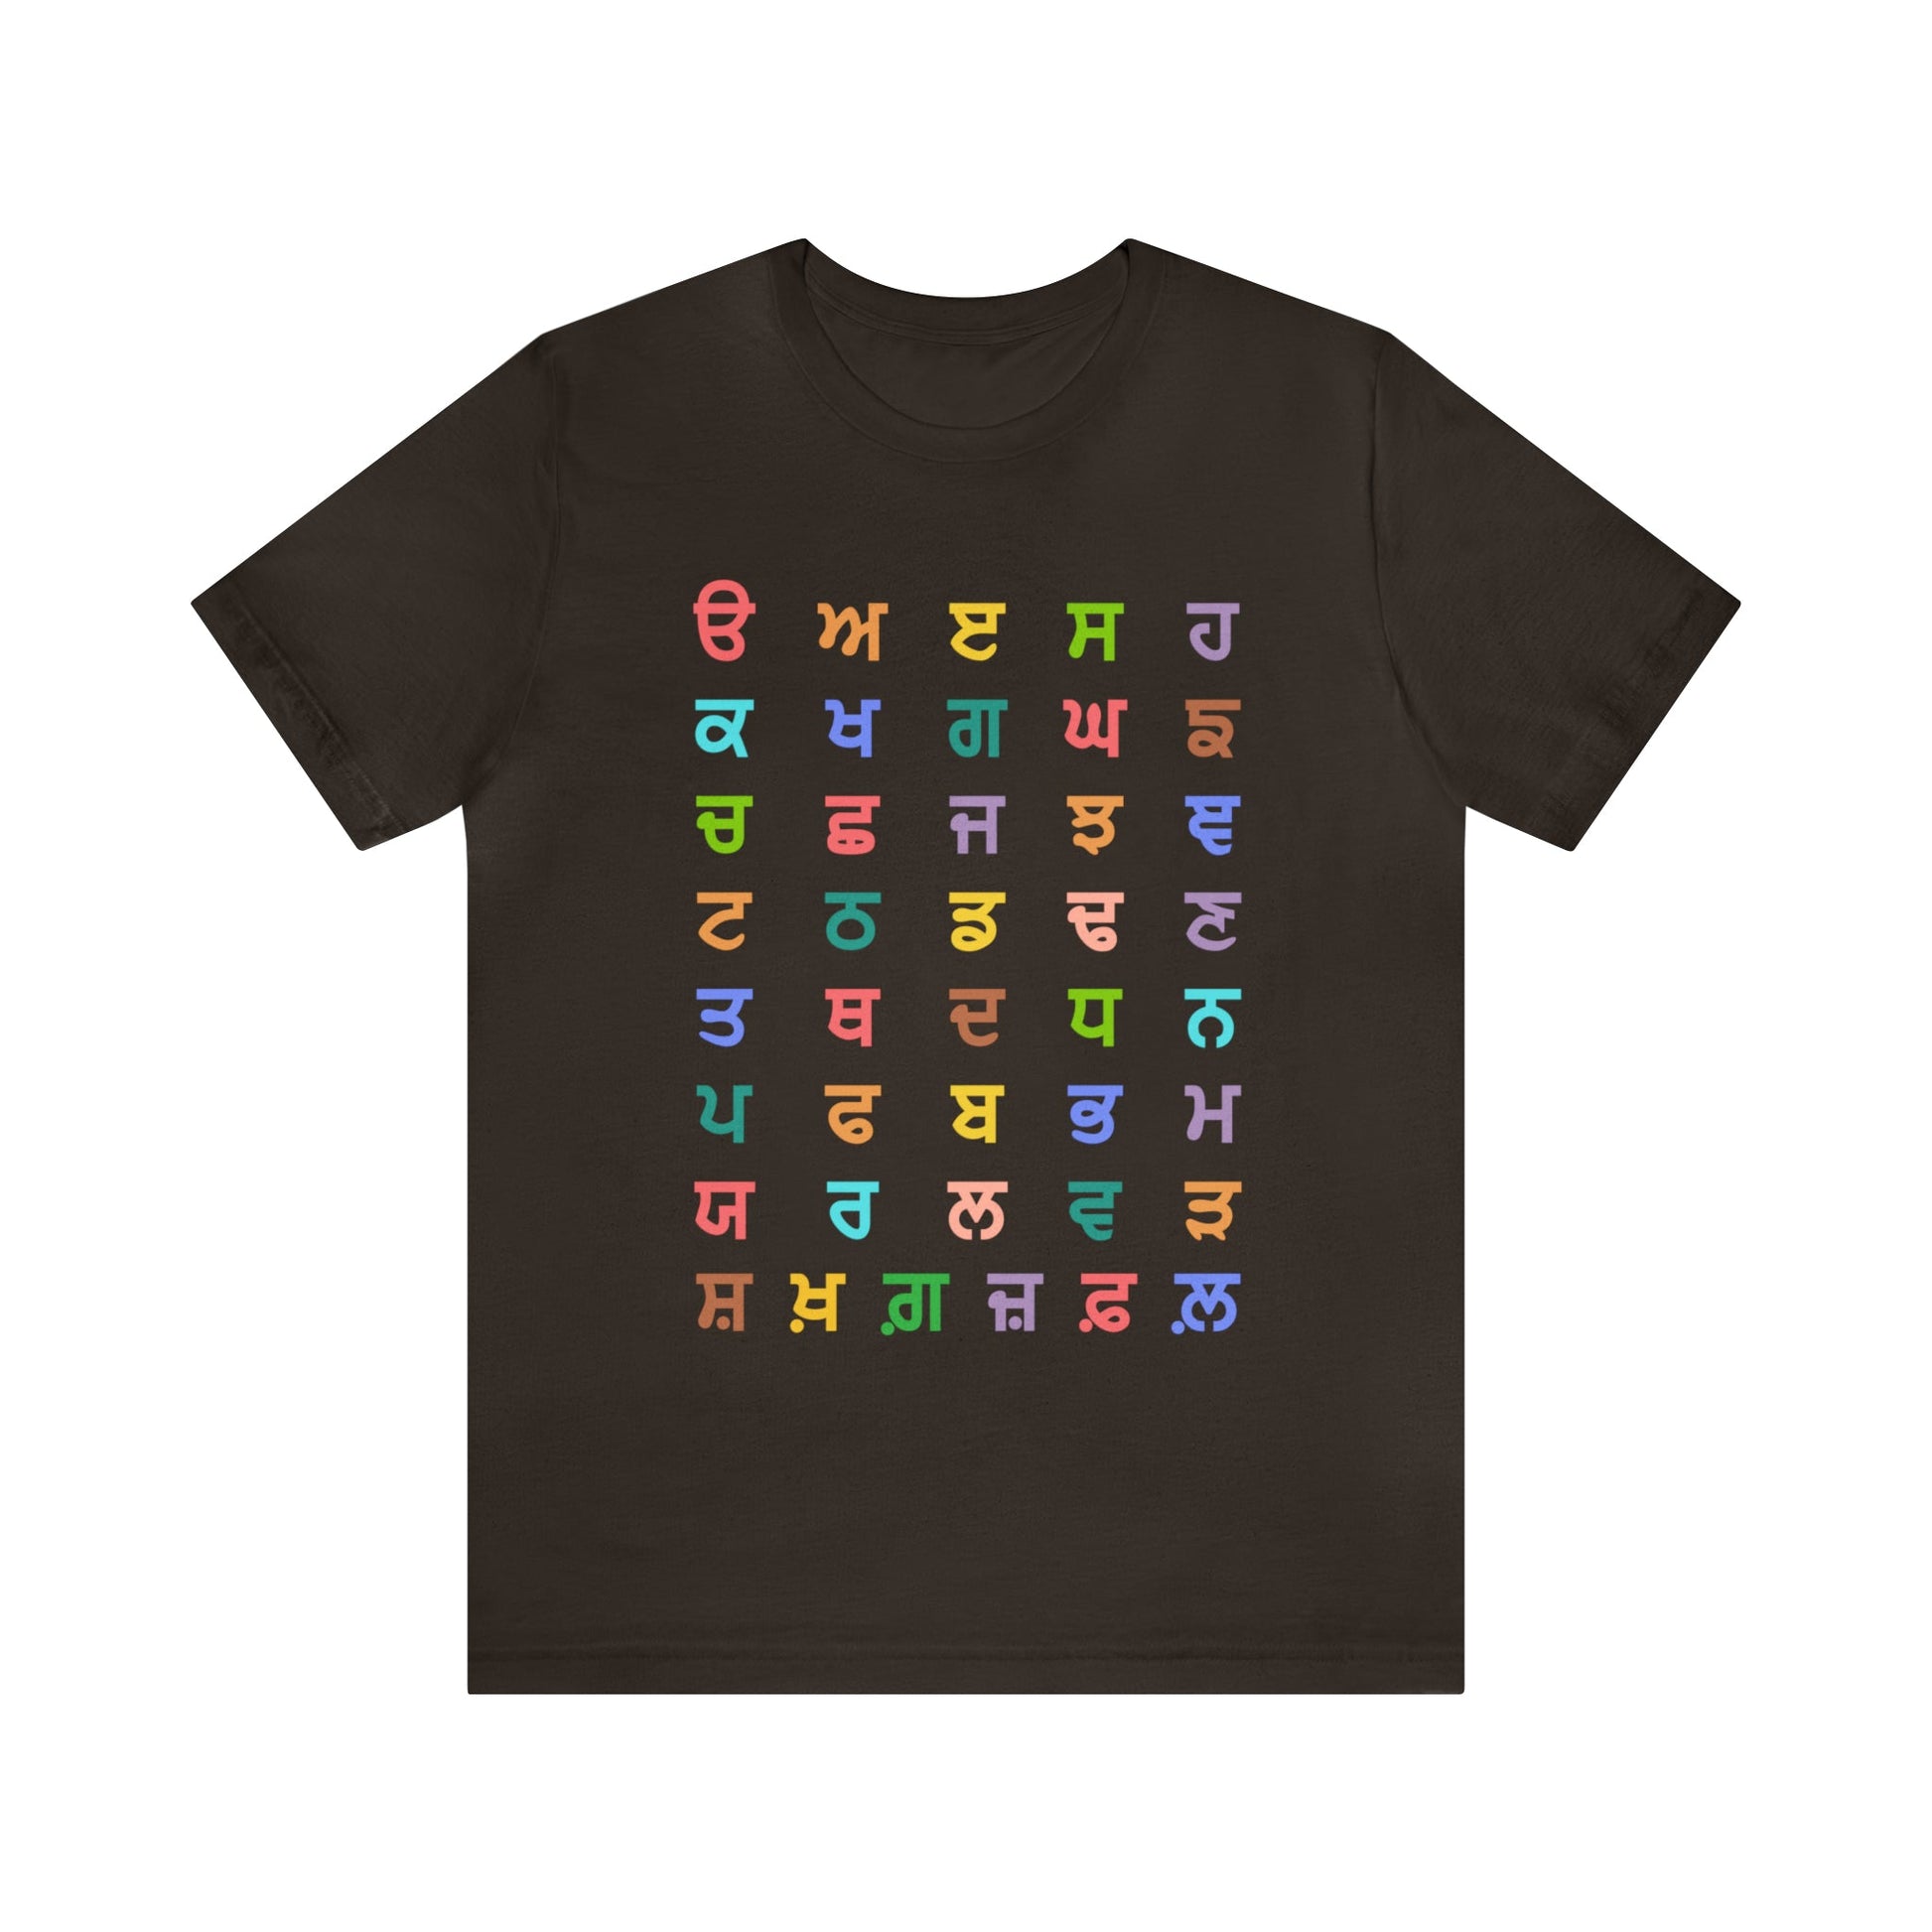 Gurmukhi Alphabets - Unisex Jersey Short Sleeve Tee - PunjabiCharm